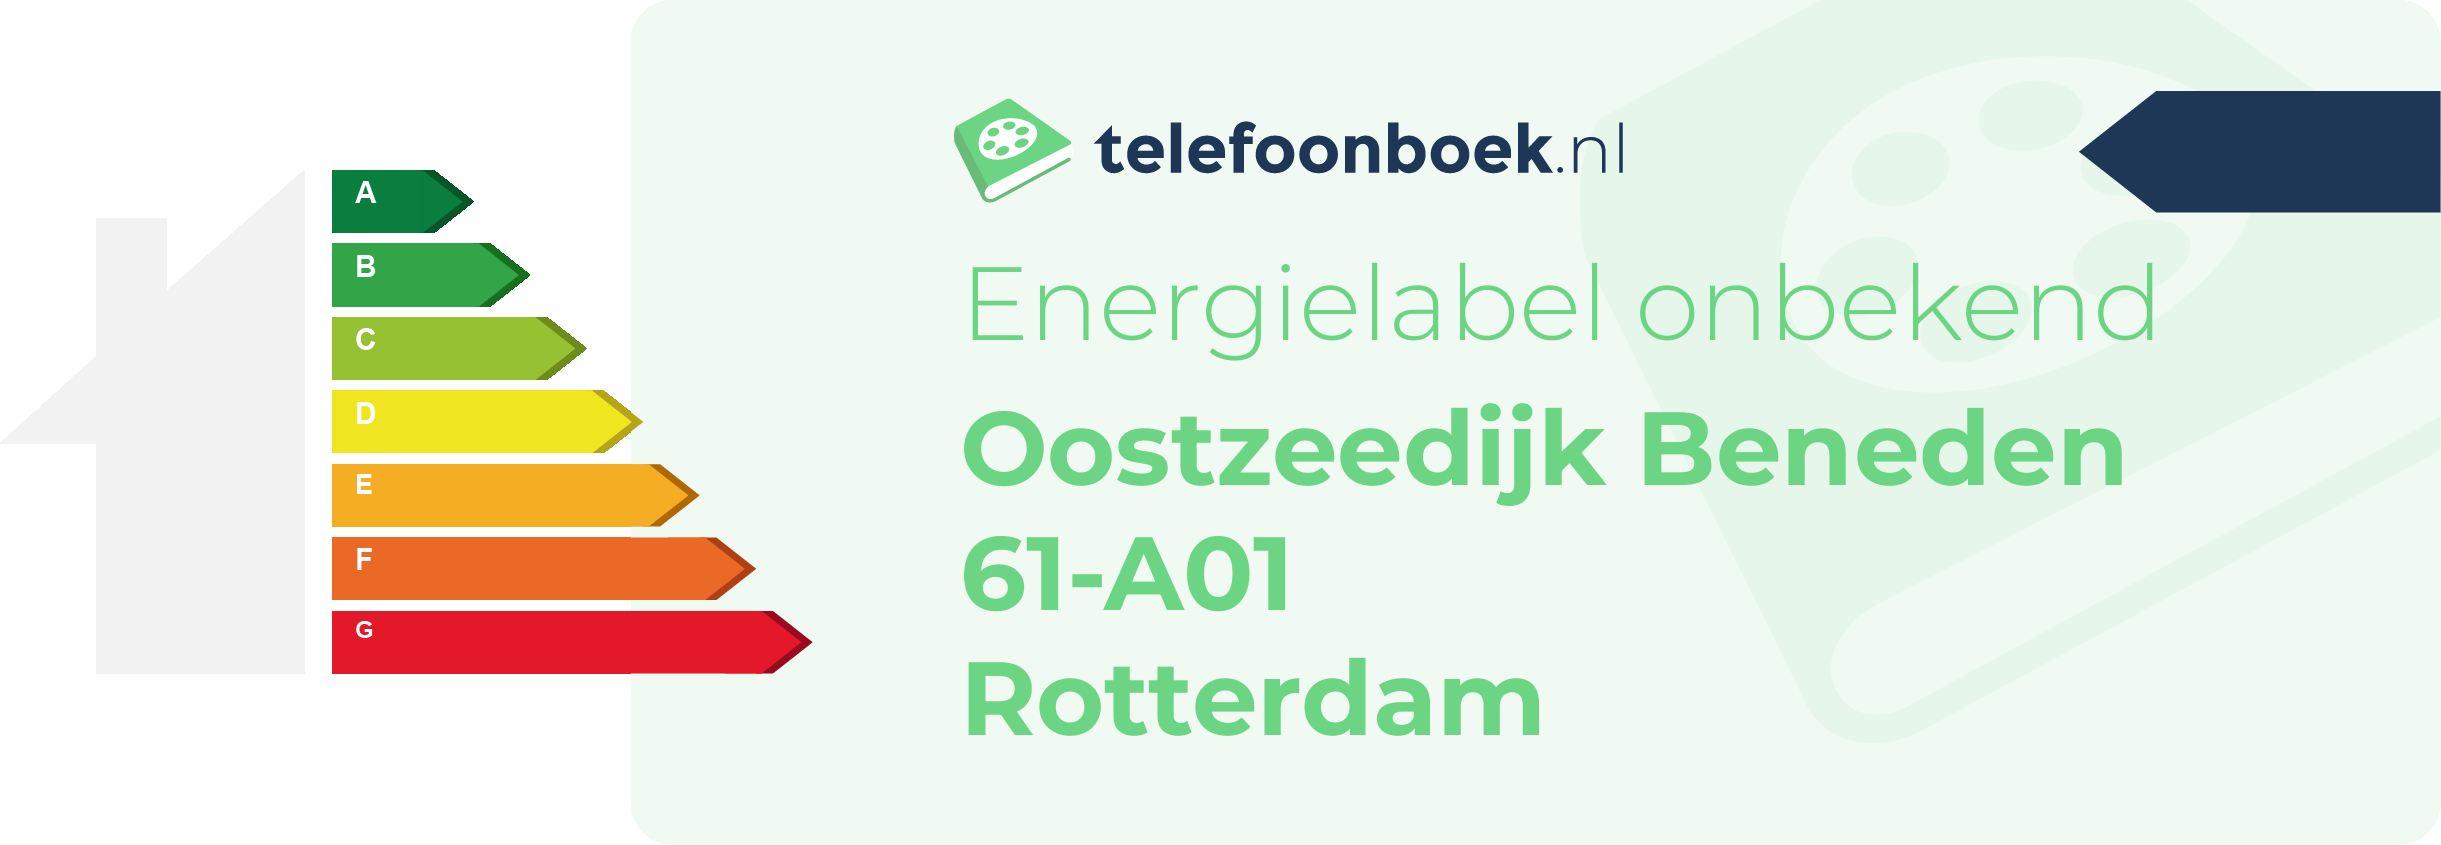 Energielabel Oostzeedijk Beneden 61-A01 Rotterdam